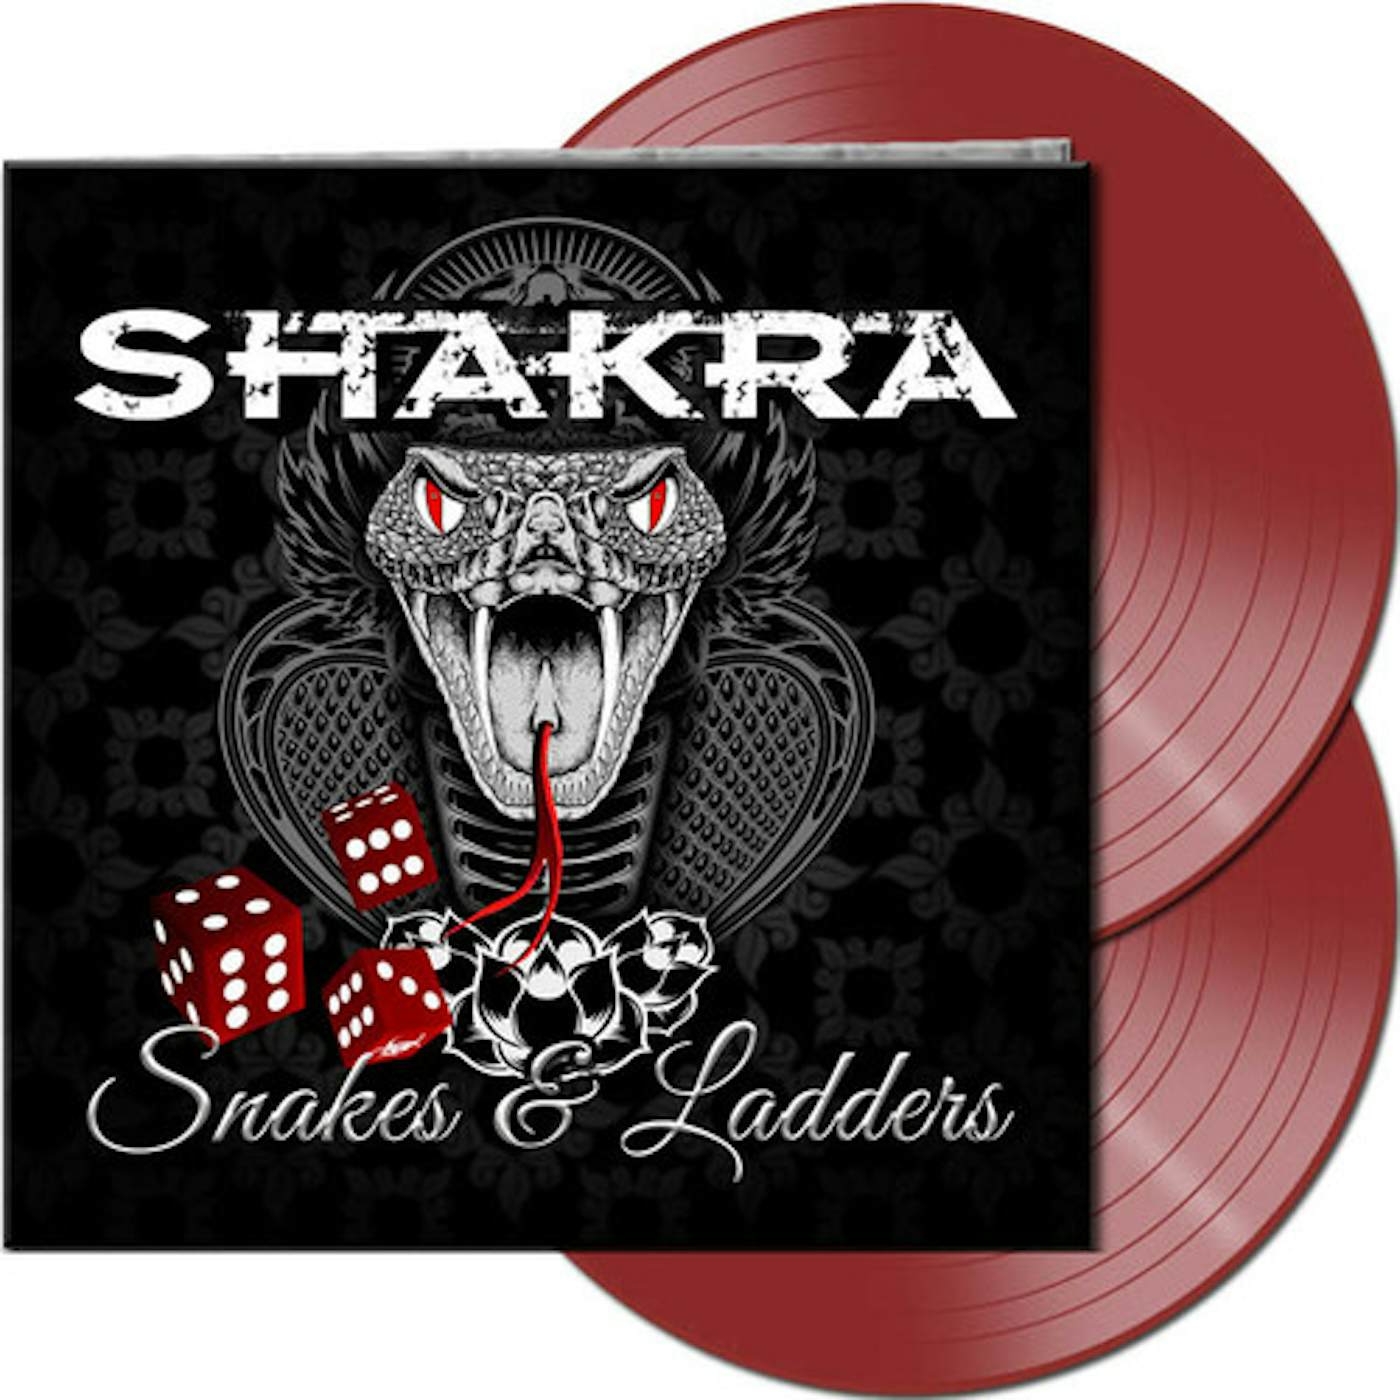 Shakra Snakes & Ladders Vinyl Record